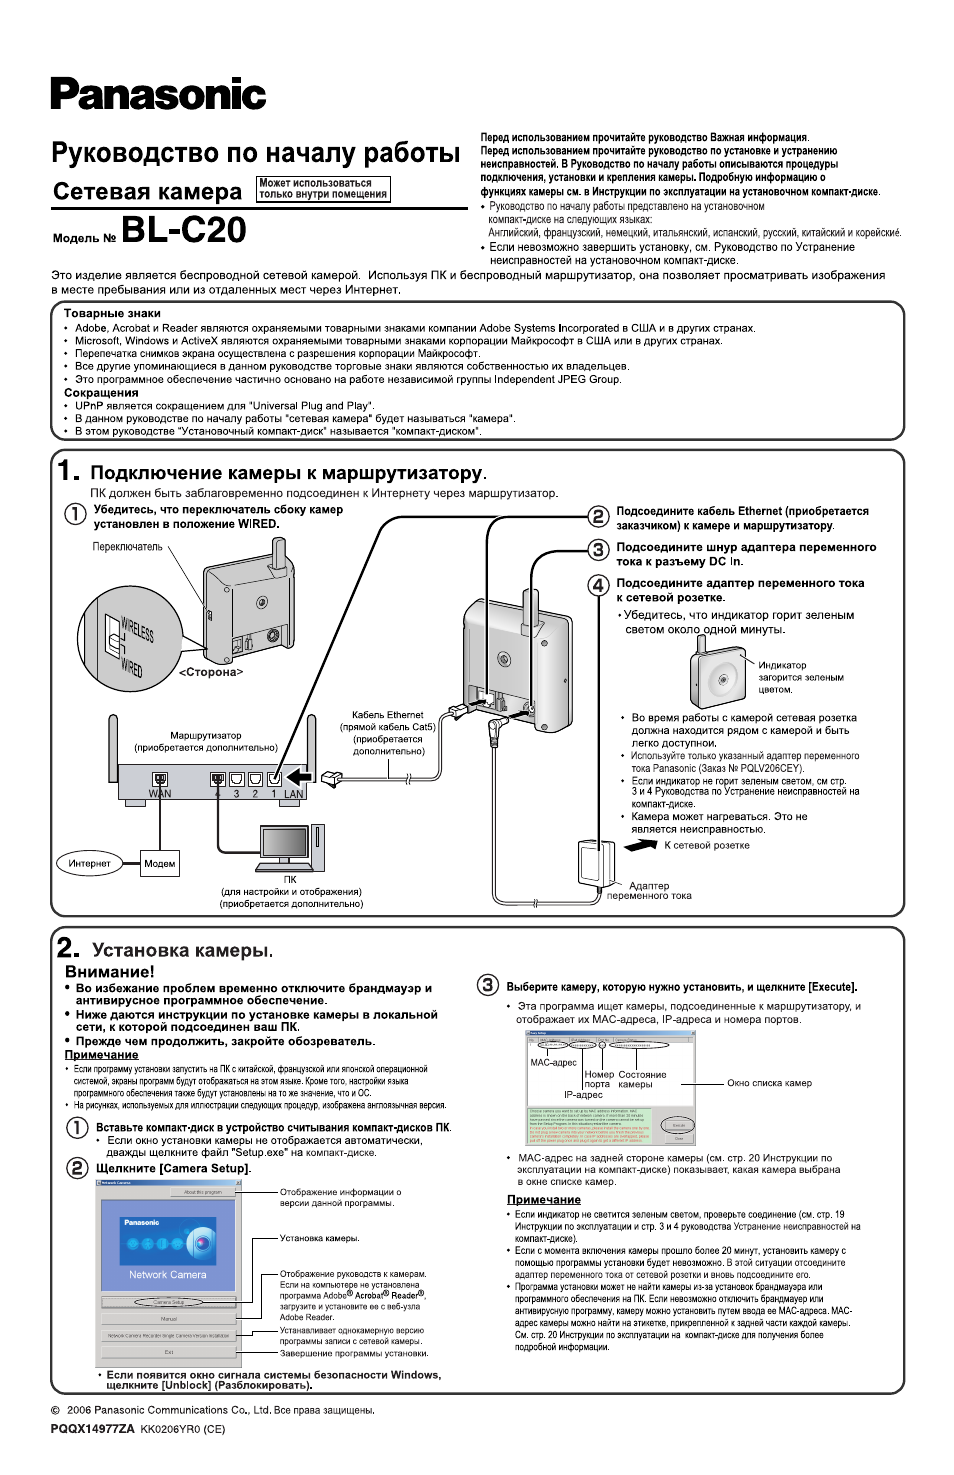 Инструкция по эксплуатации Panasonic BL-C20 | 4 страницы